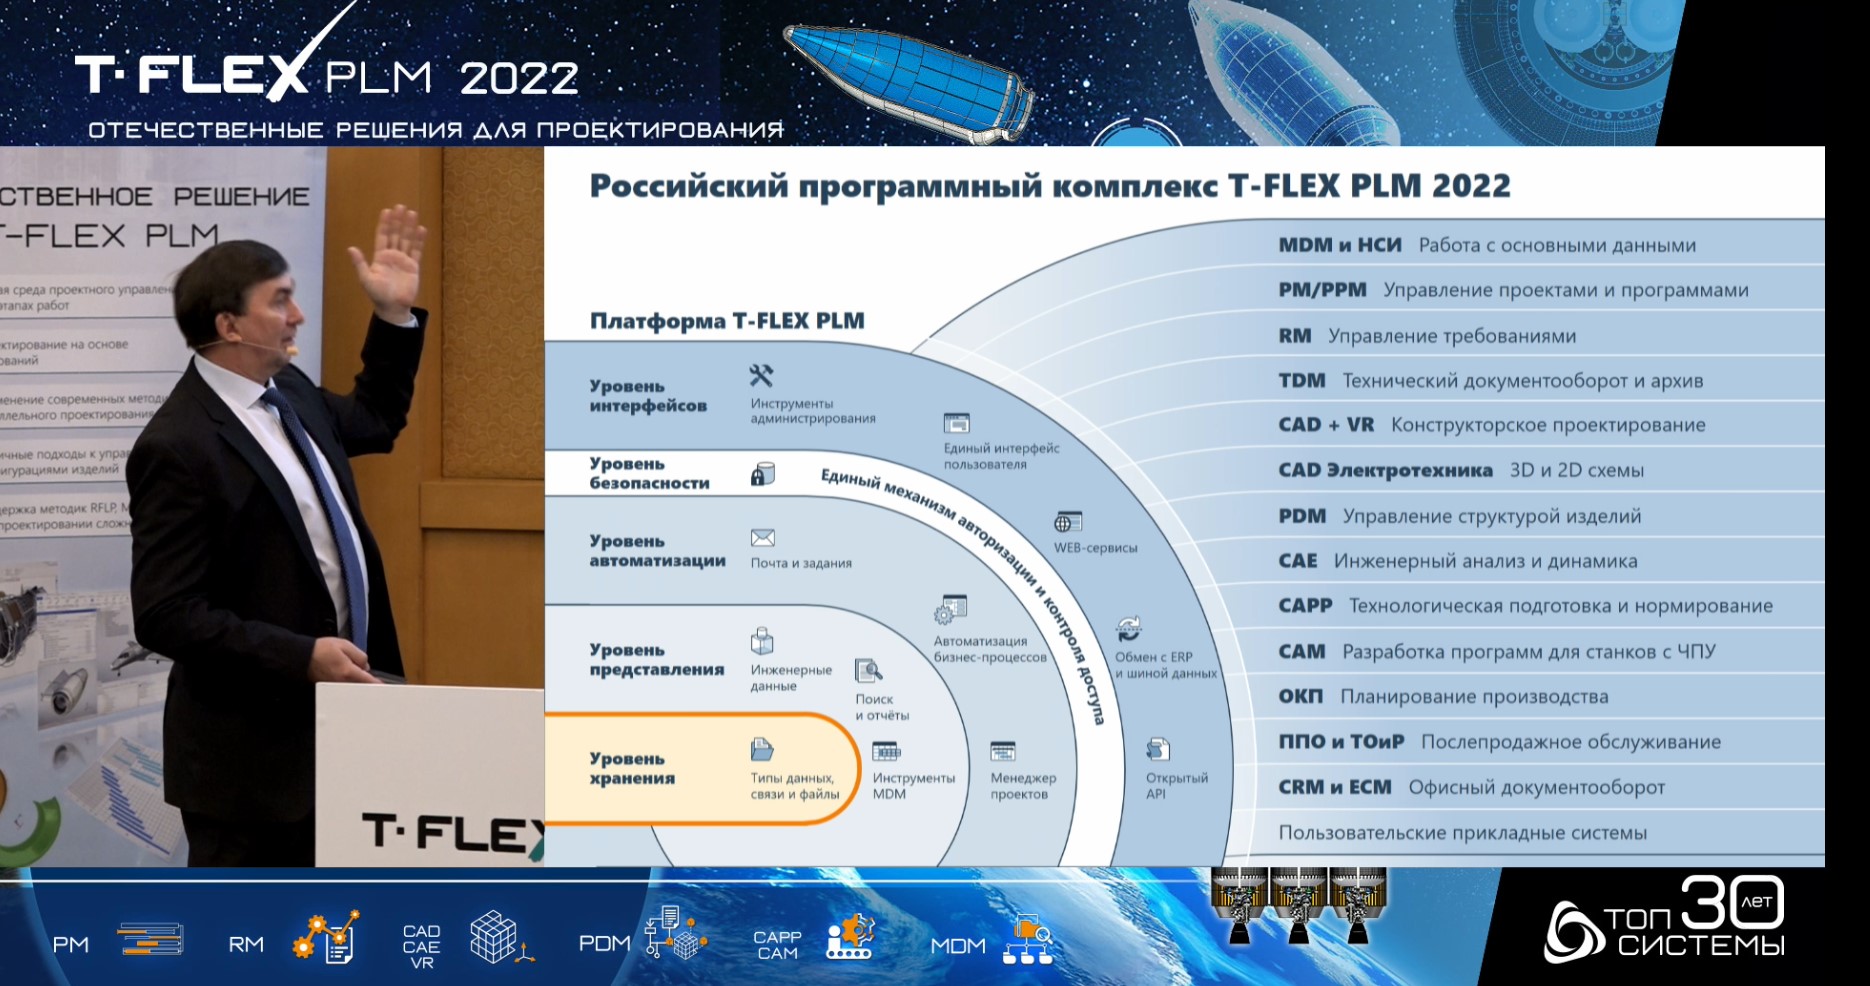      T-FLEX PLM